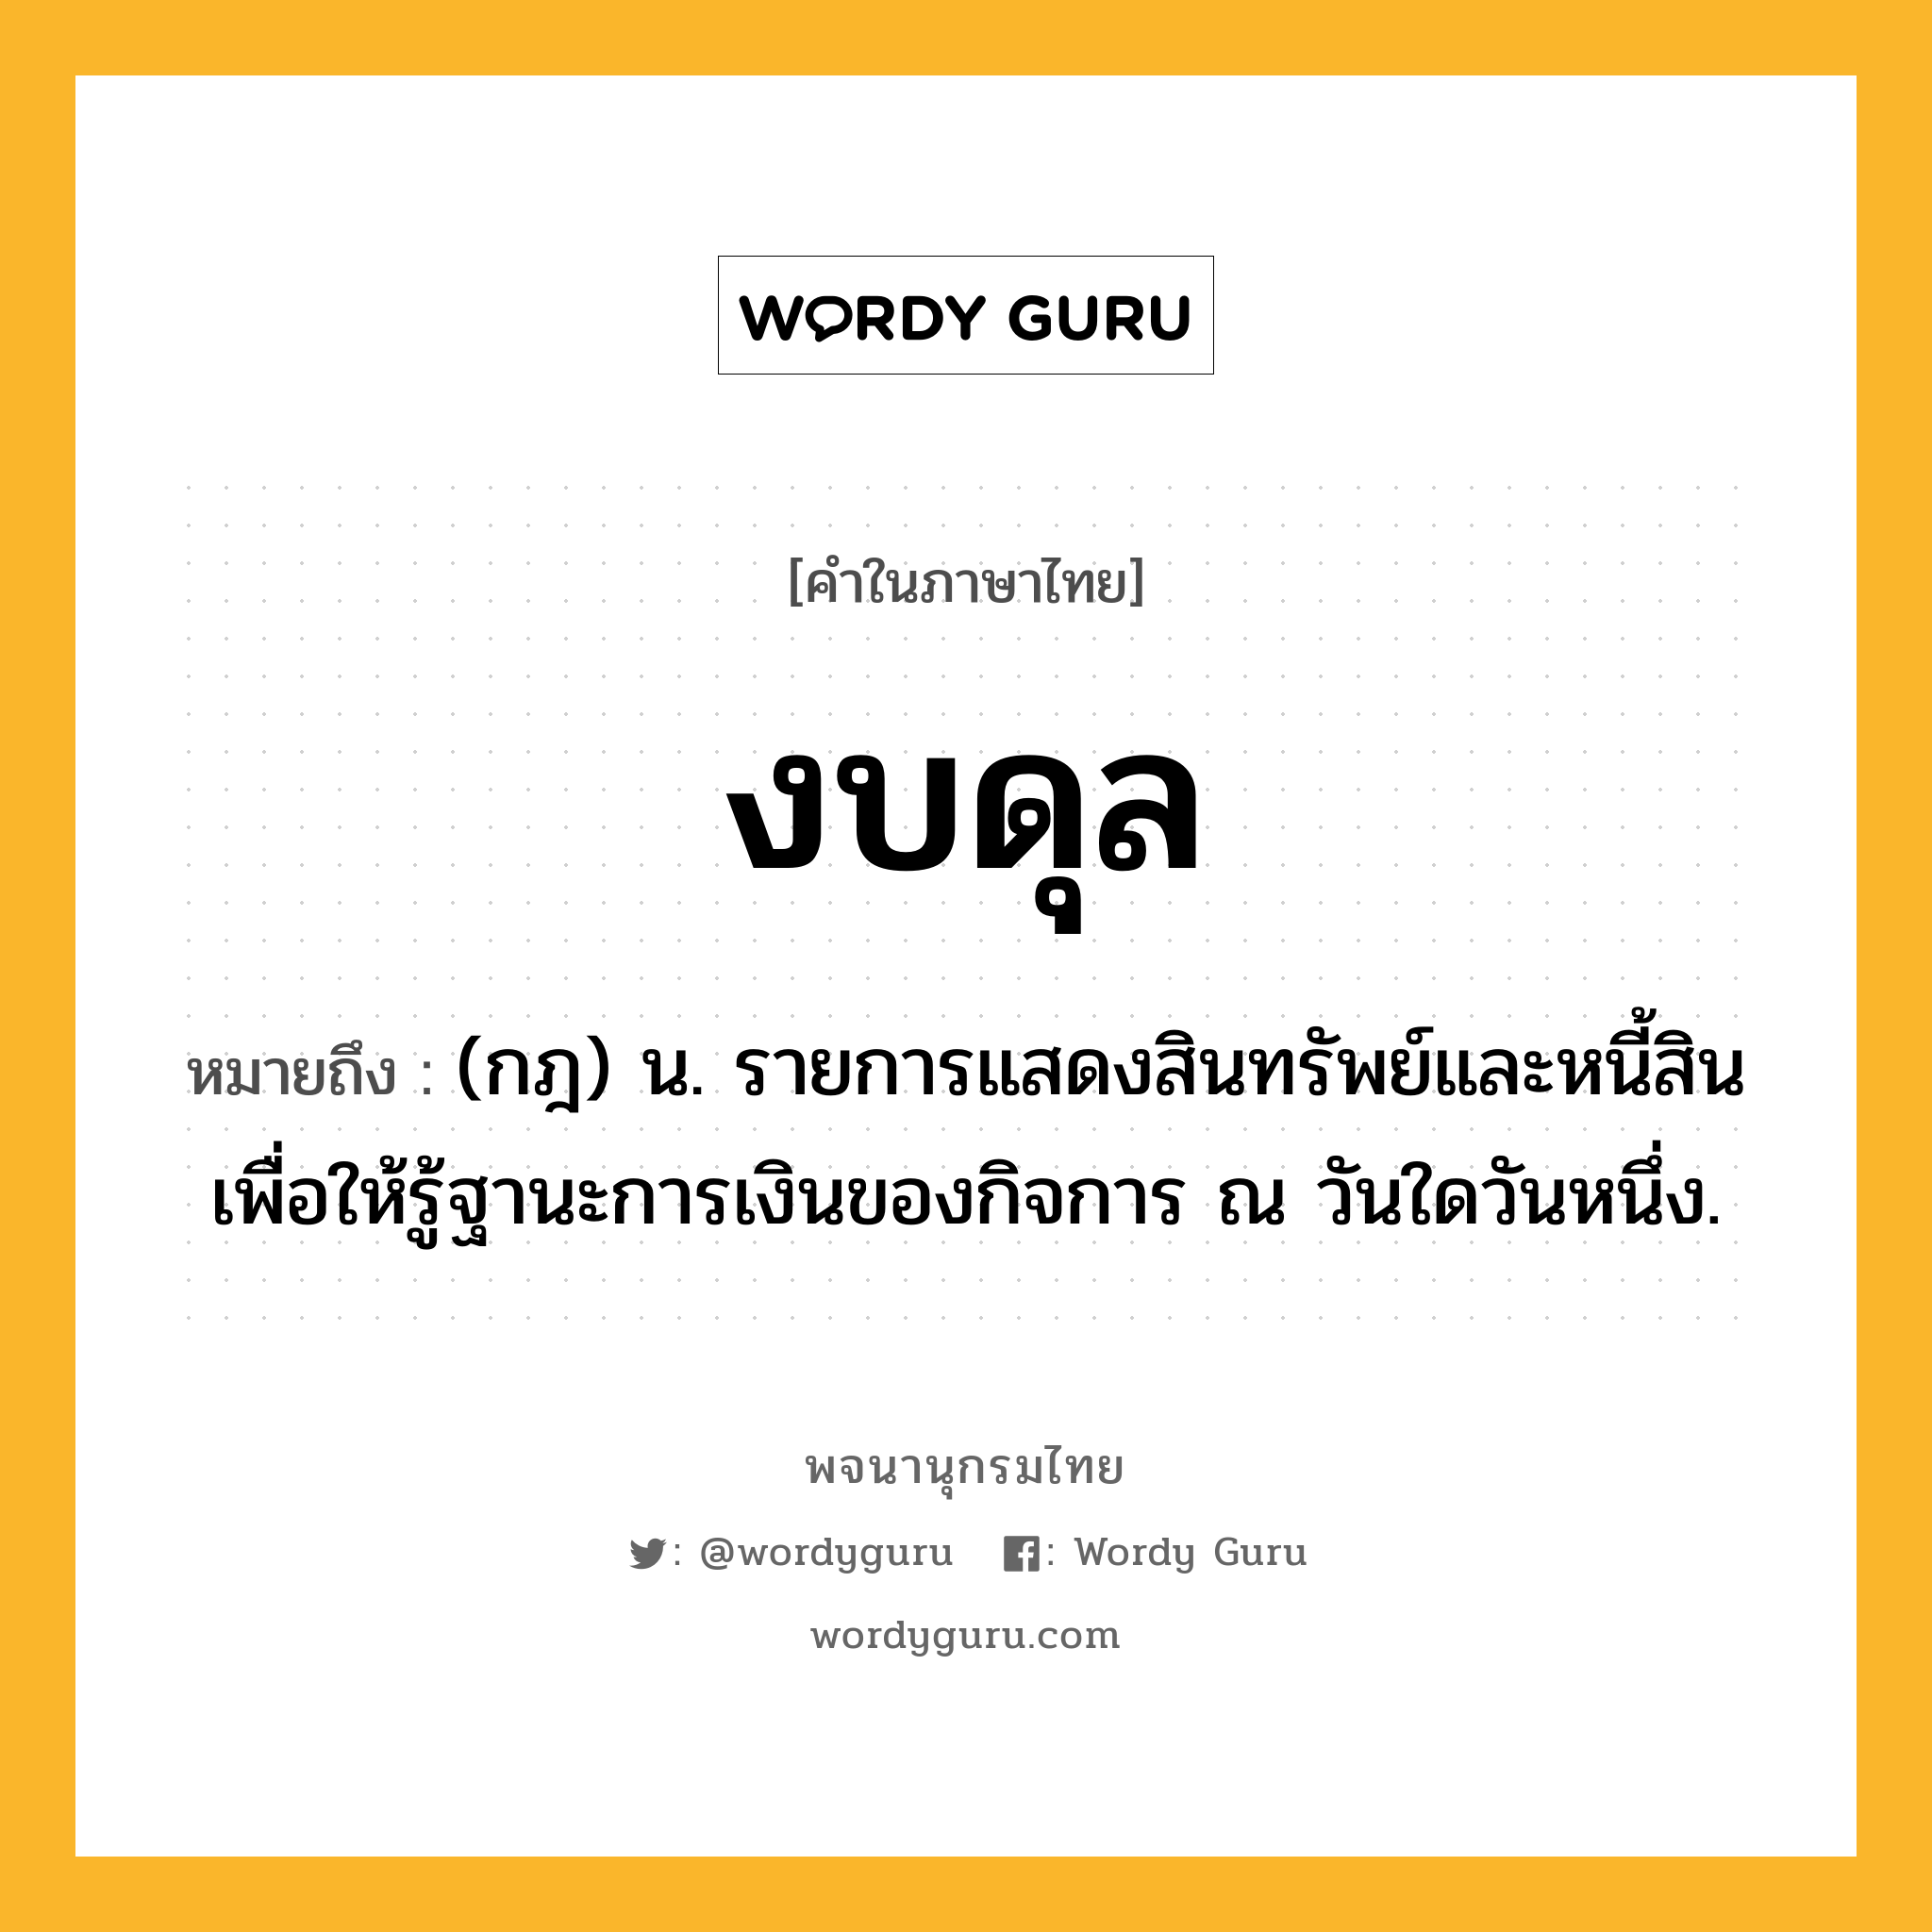 งบดุล ความหมาย หมายถึงอะไร?, คำในภาษาไทย งบดุล หมายถึง (กฎ) น. รายการแสดงสินทรัพย์และหนี้สิน เพื่อให้รู้ฐานะการเงินของกิจการ ณ วันใดวันหนึ่ง.